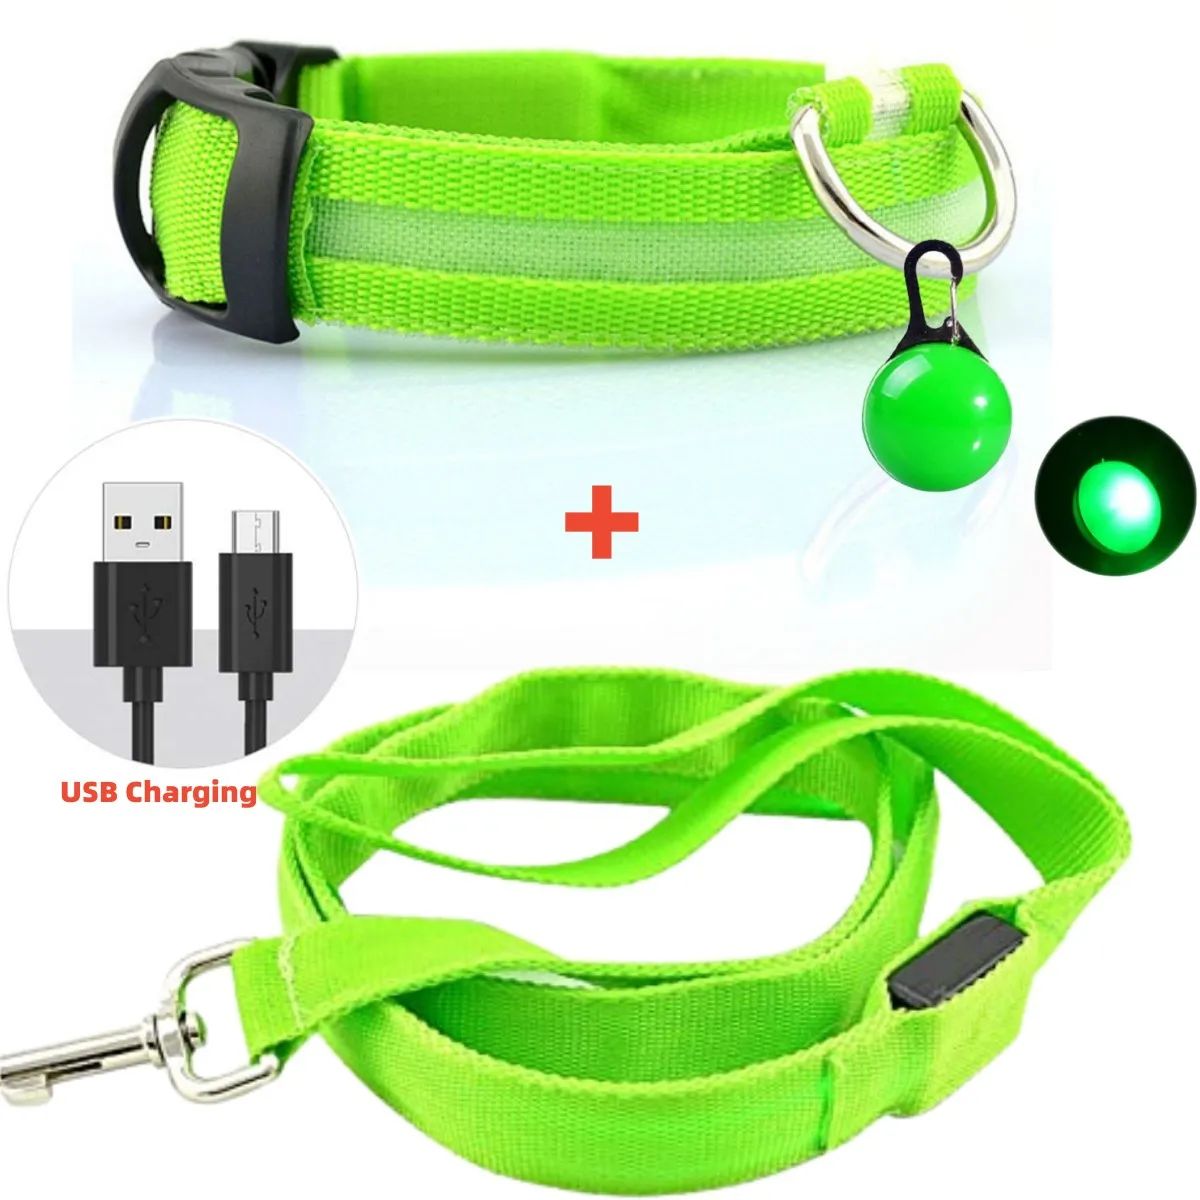 Färg: Green USB SetSize: XL